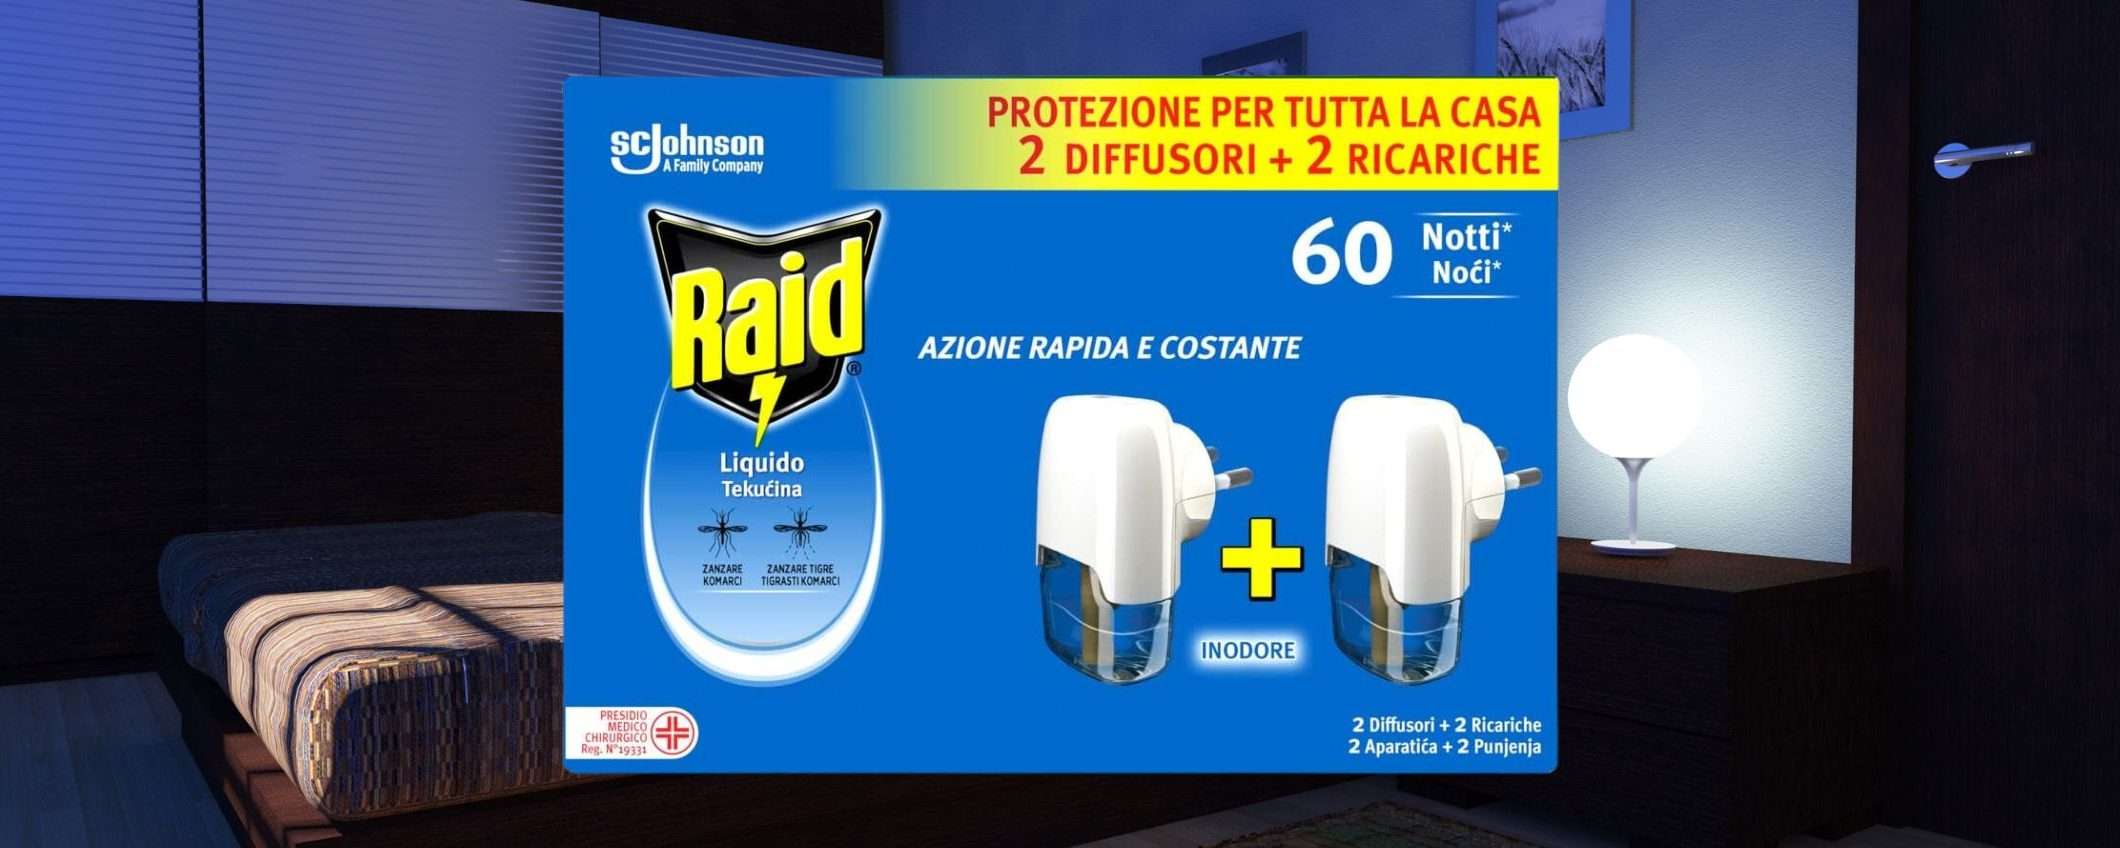 Raid Liquido Antizanzare: formato CONVENIENZA in MAXI SCONTO a meno di 7 euro